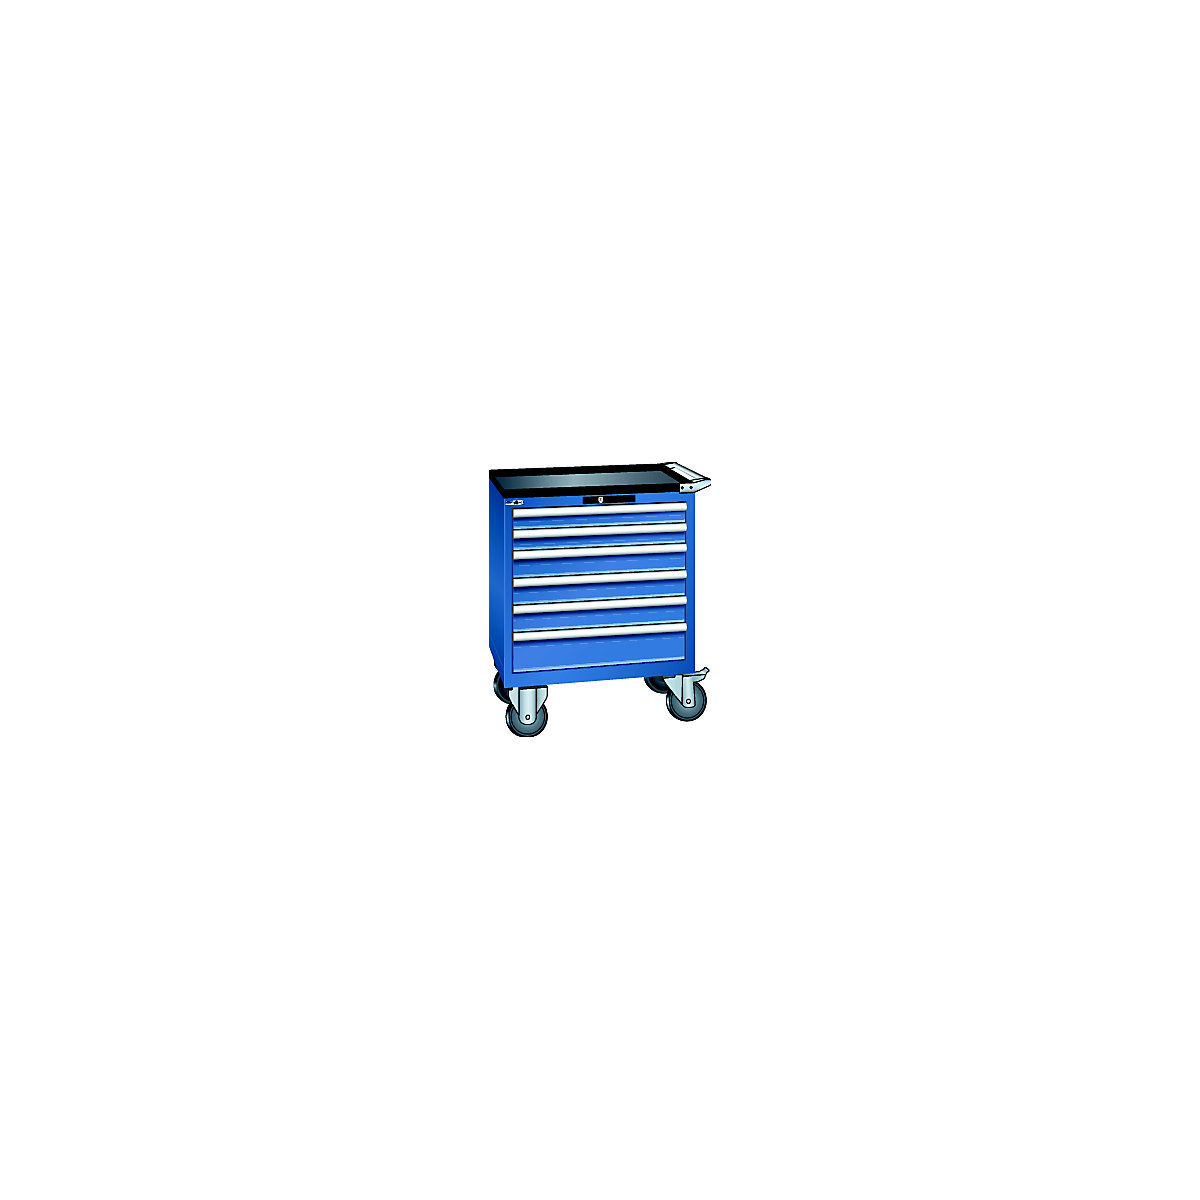 LISTA – Ladičar, pomičan, ŠxDxV 717 x 572 x 962 mm, ladice 2 x 75 / 3 x 100 / 1 x 150 mm, u encijan plavoj boji